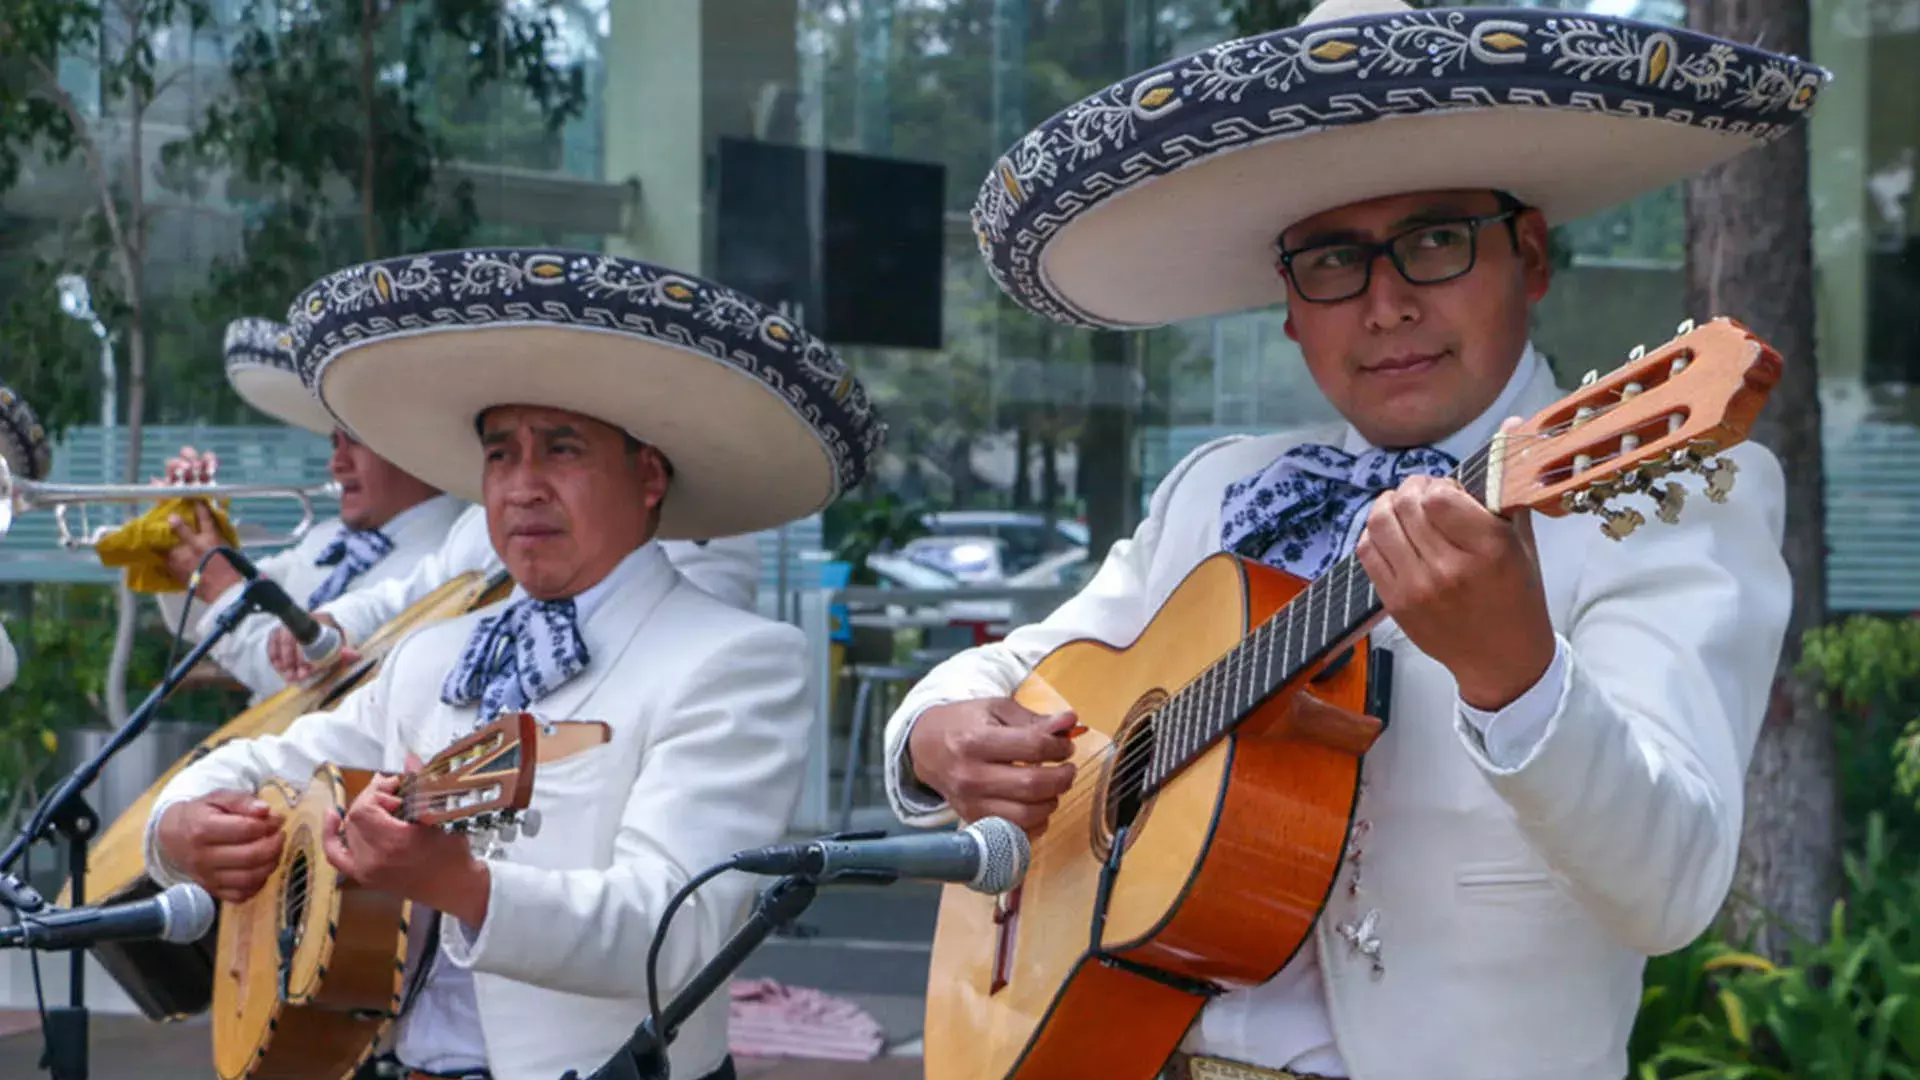 Festejos del 75 Aniversario del Tec de Monterrey en campus Toluca